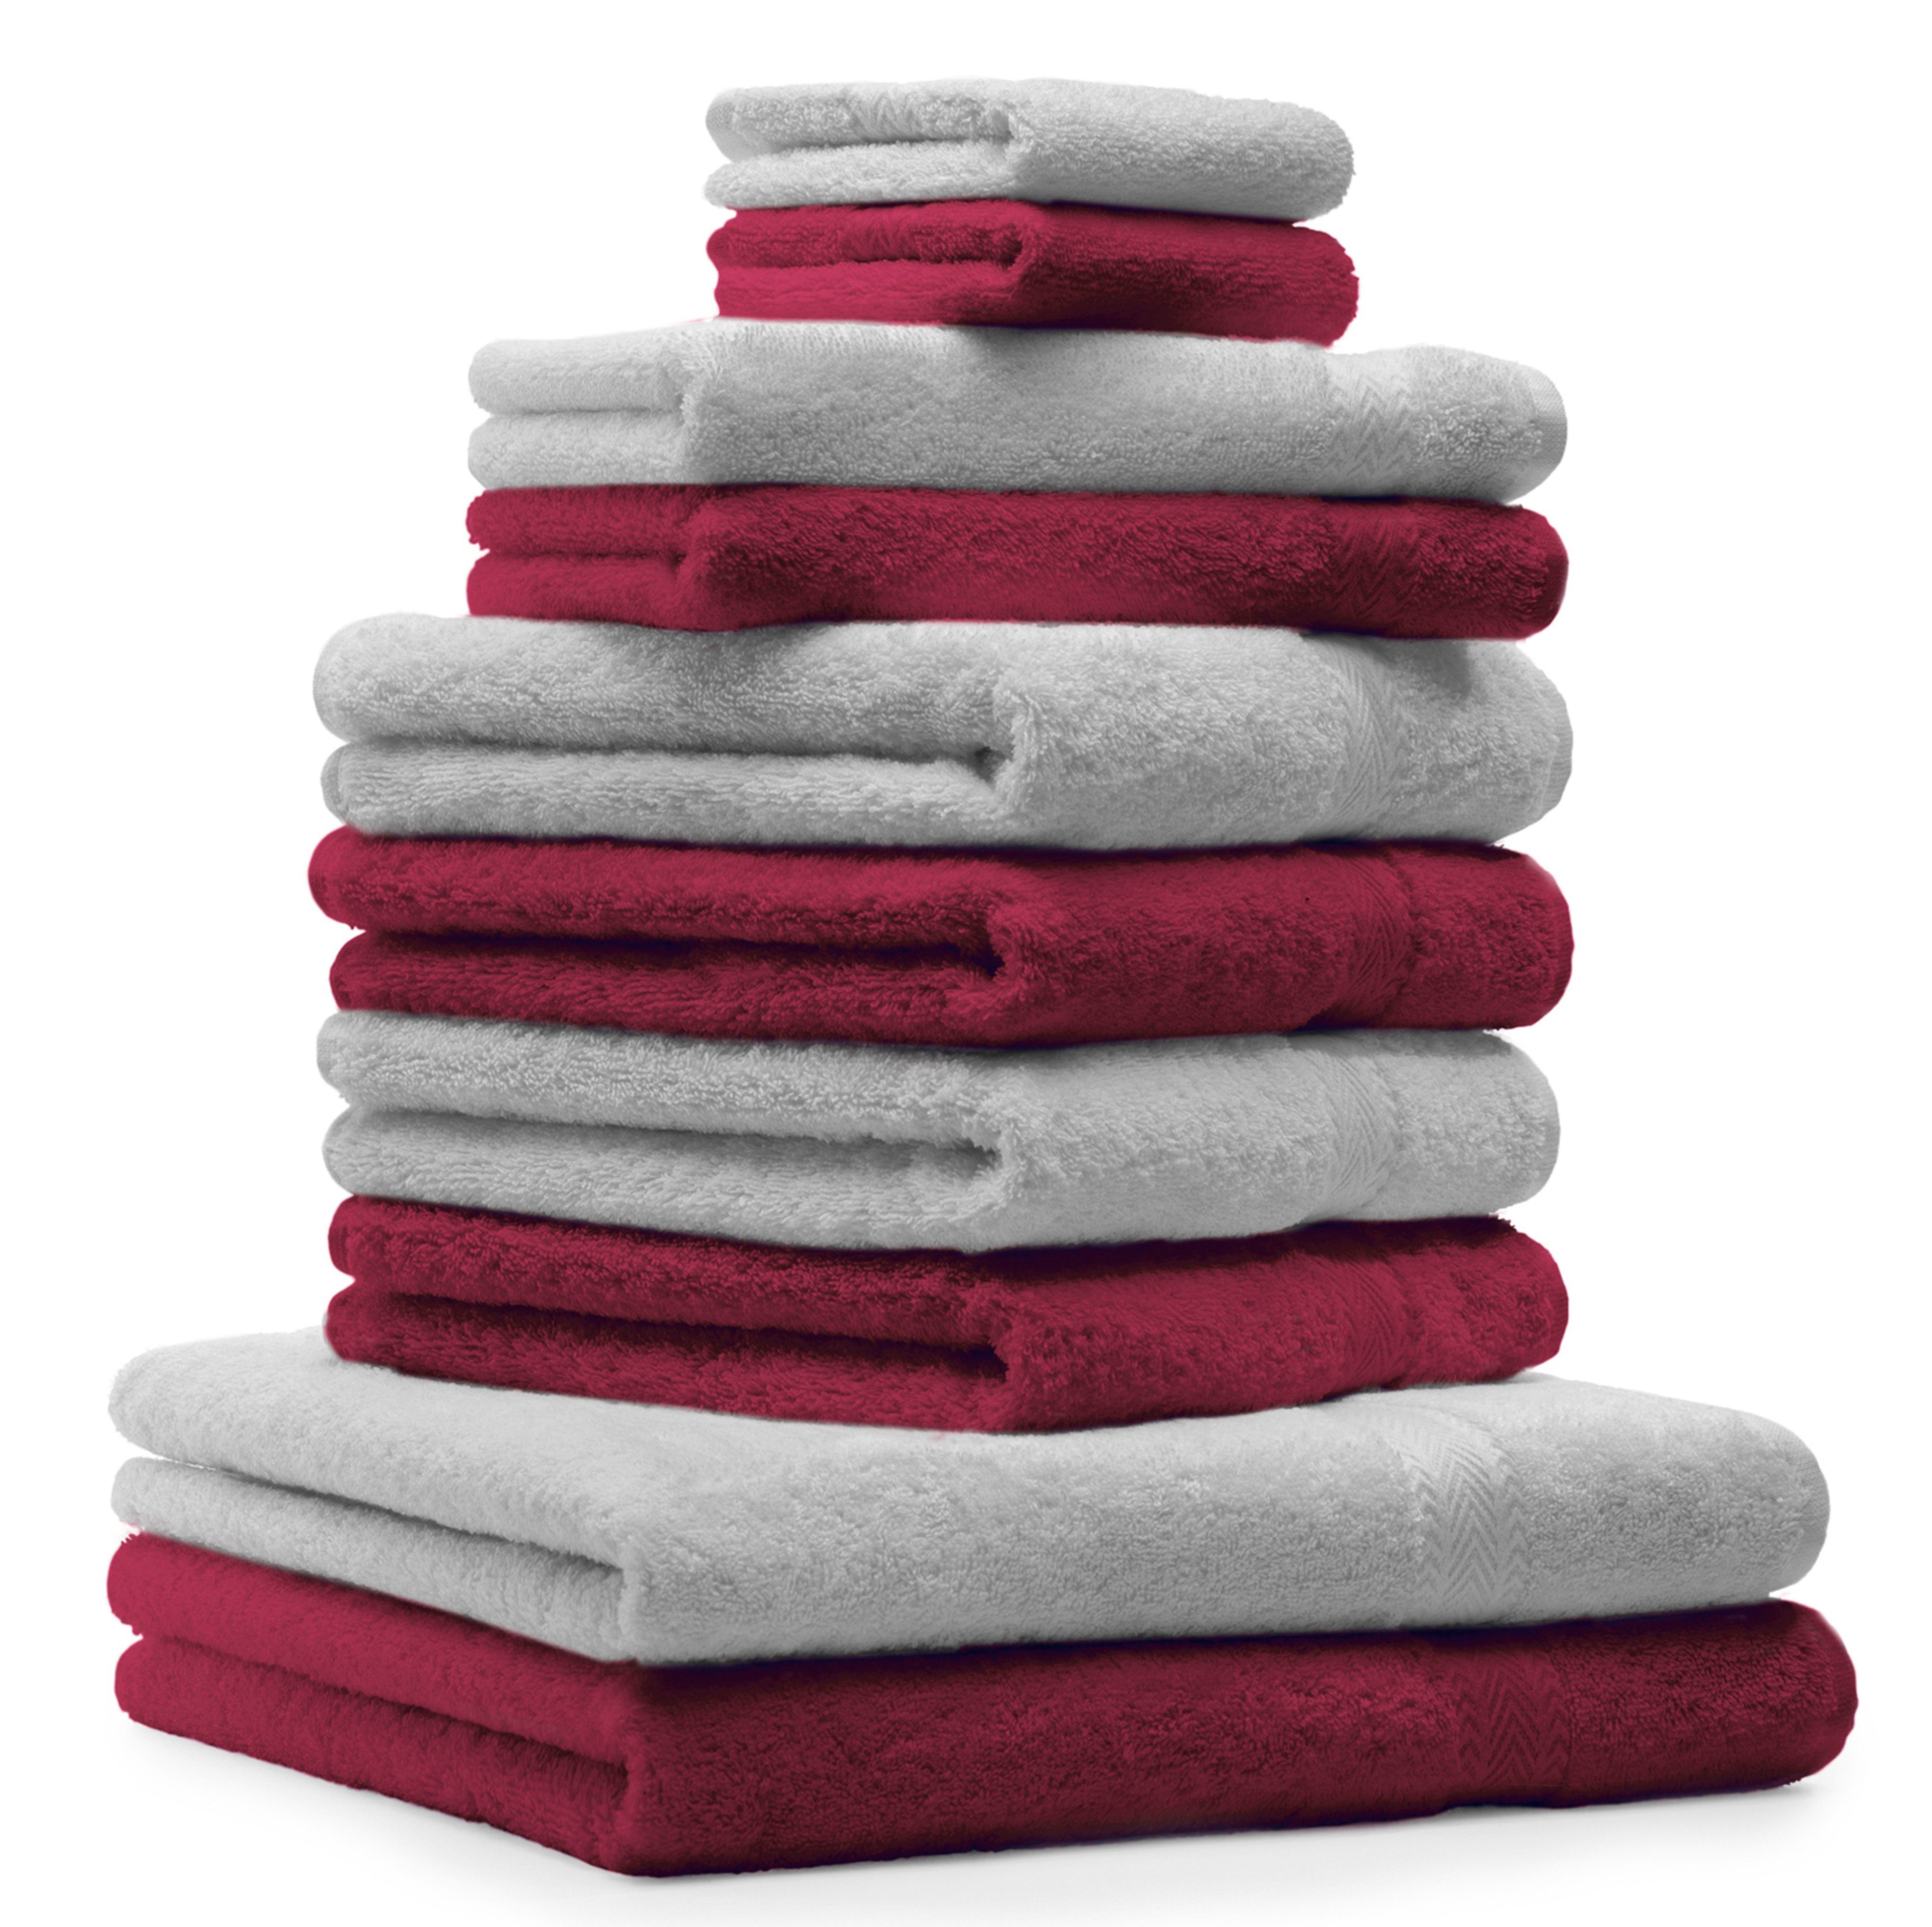 Betz Handtuch Set 10-TLG. Handtuch-Set Classic Farbe dunkelrot und silbergrau, 100% Baumwolle | Handtuch-Sets